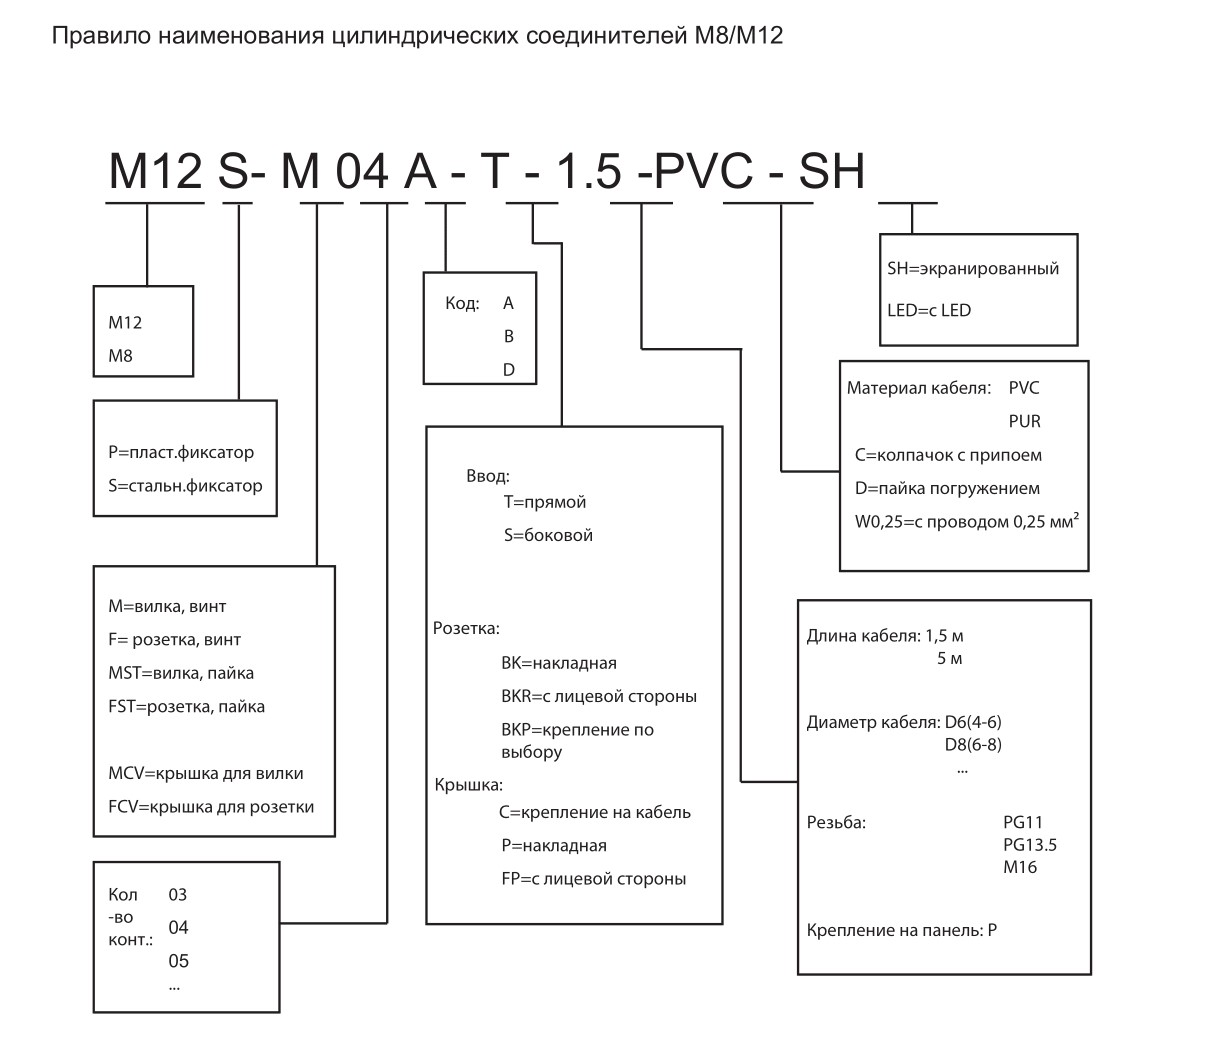 Цилиндрический соединитель-2 розетки (каб. сборка) M12-F04D-T/F04D-T-1.5-PUR-Cat.5e 1630044024512: Структура обозначения